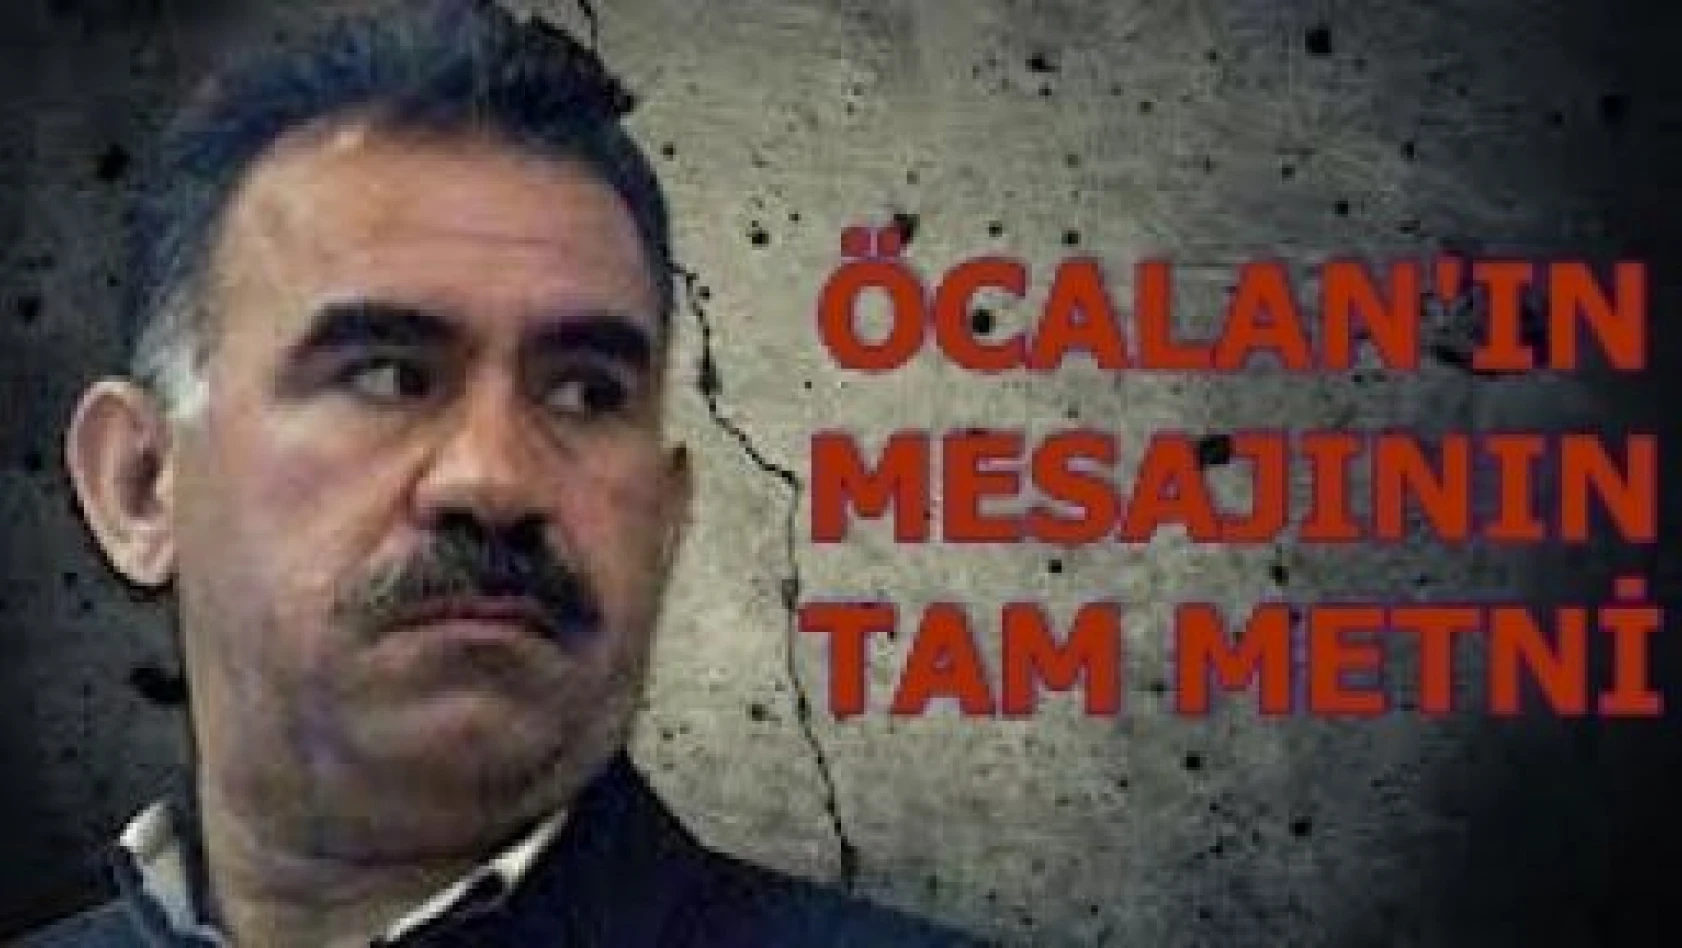 İşte Abdullah Öcalan'ın Mesajının Tam Metni...